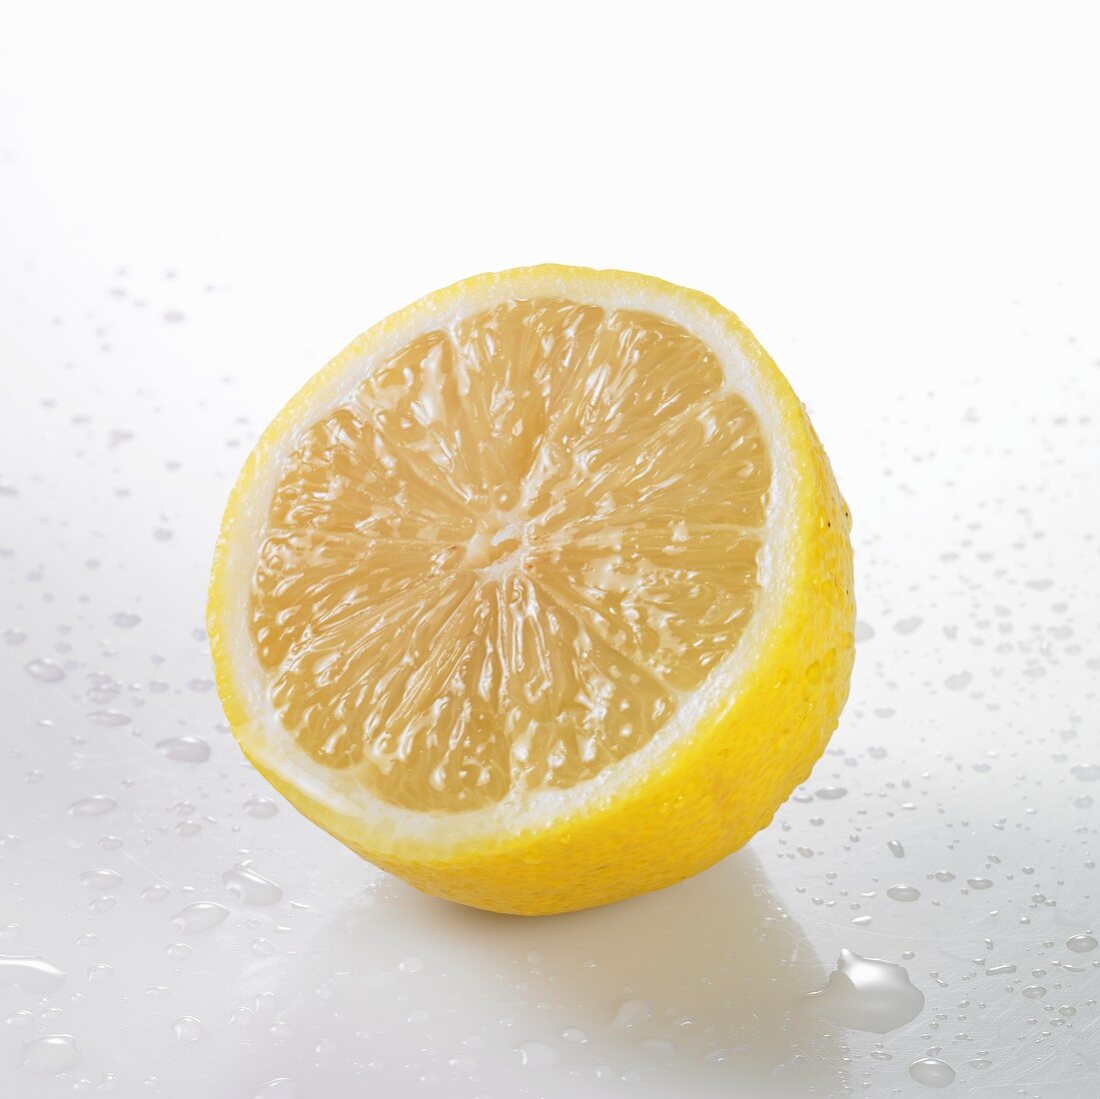 A freshly washed half lemon